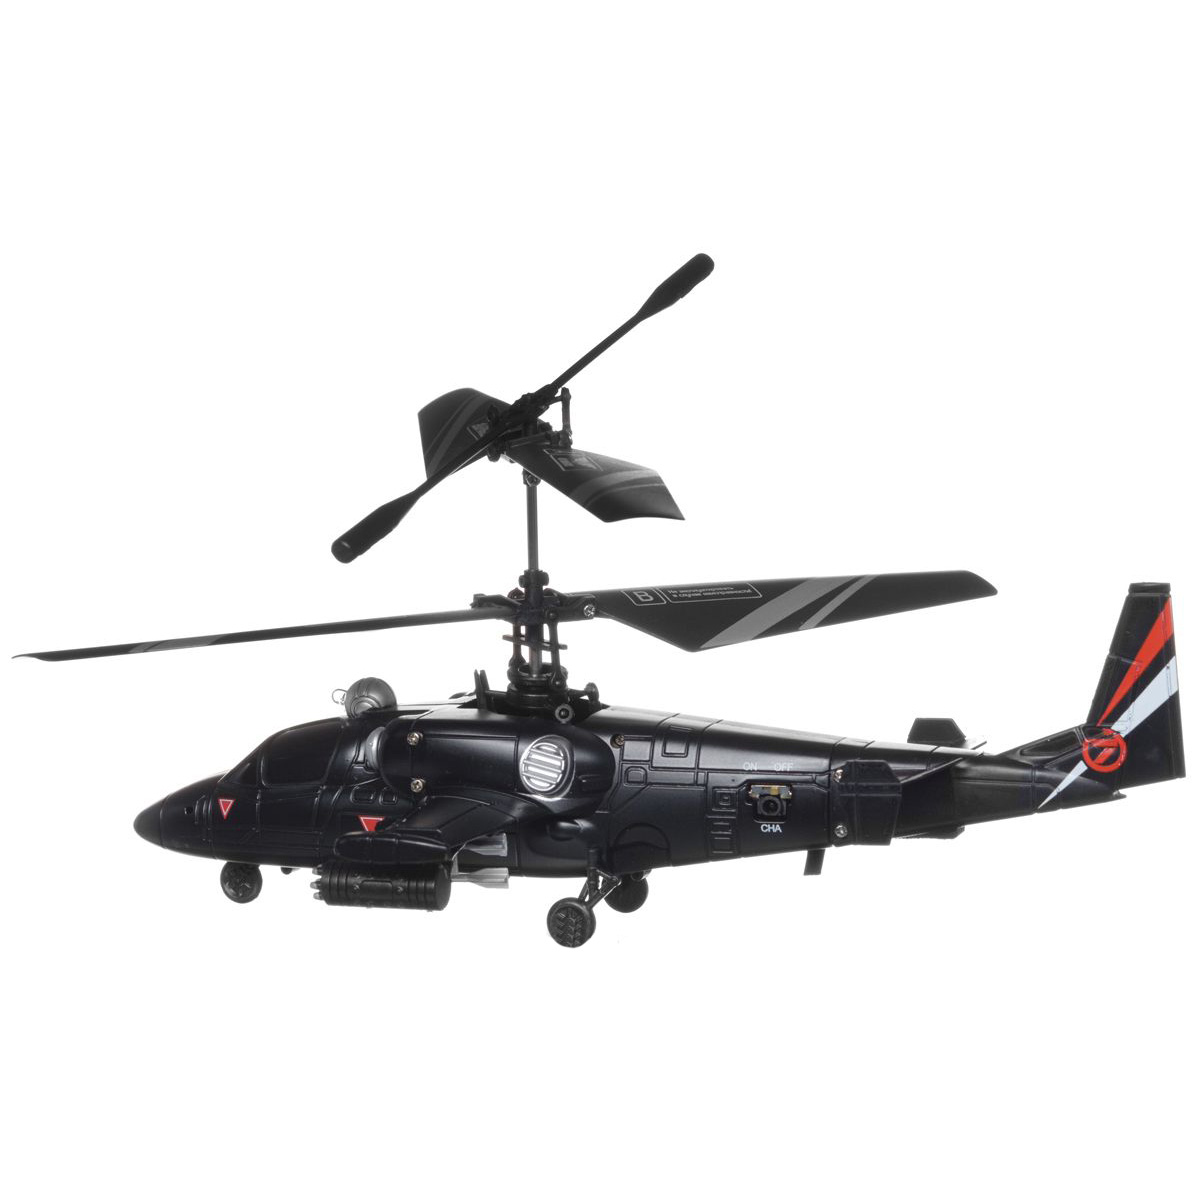 Большой вертолет на радиоуправлении. Радиоуправляемый вертолет SPL 180. Cherlead Black Griffin вертолёт на пульте. Вертолет от винта Fly-0240. Военный вертолёт ф 17 на радиоуправлении фулкаево.